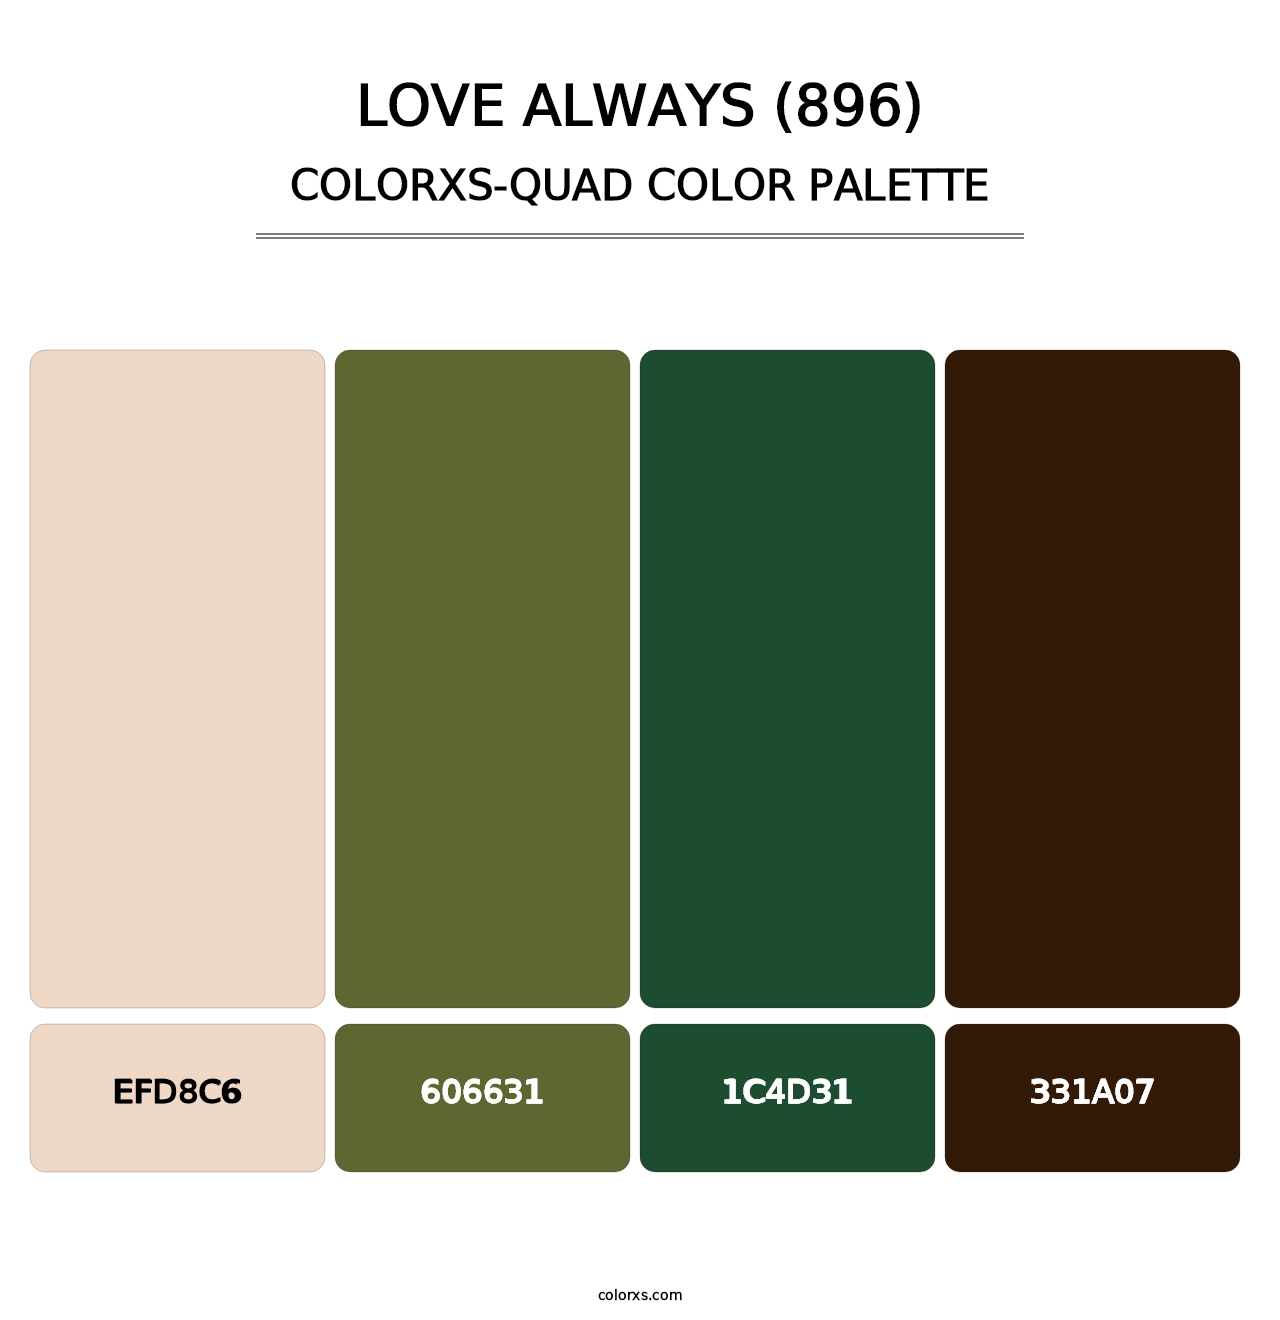 Love Always (896) - Colorxs Quad Palette